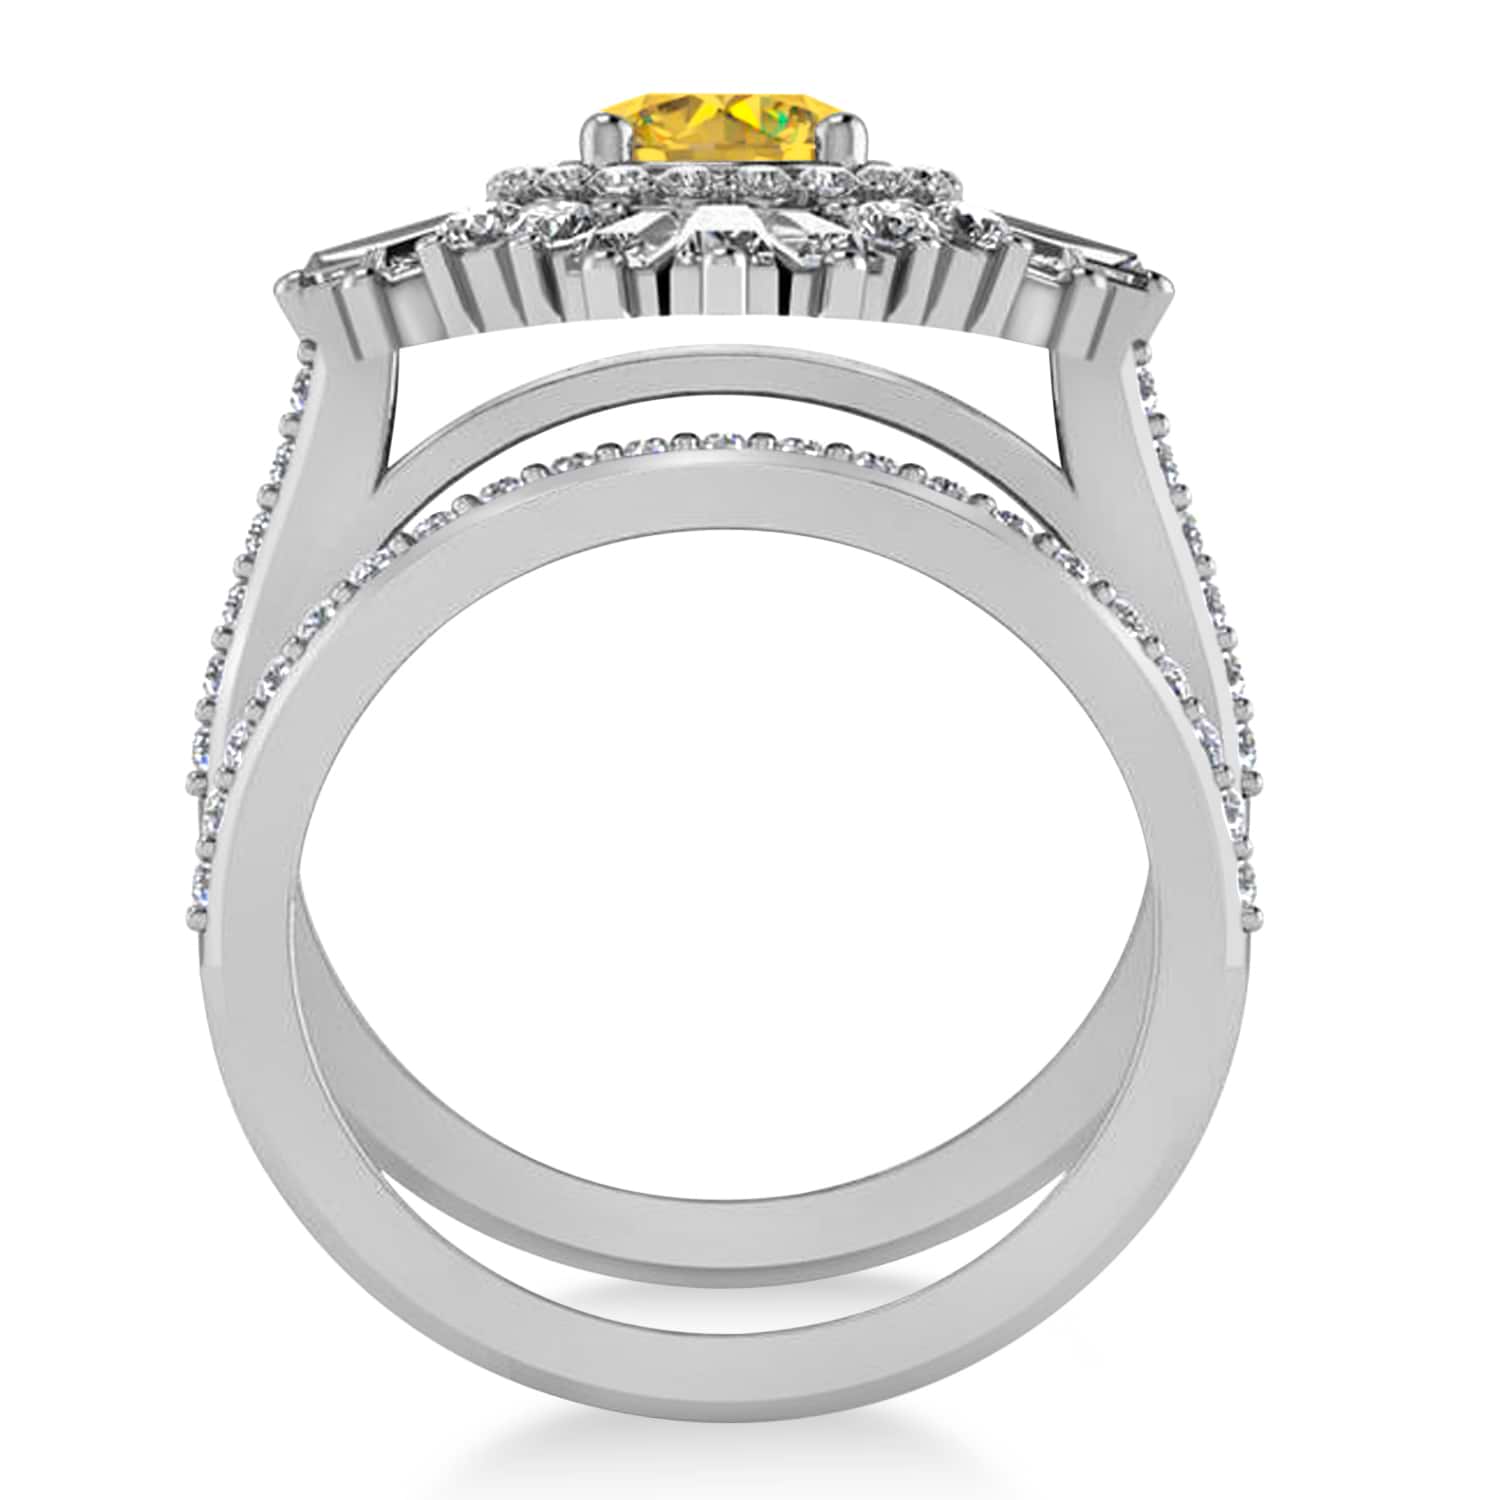 Yellow Sapphire & Diamond Ballerina Engagement Ring 18k White Gold (2.74 ctw)